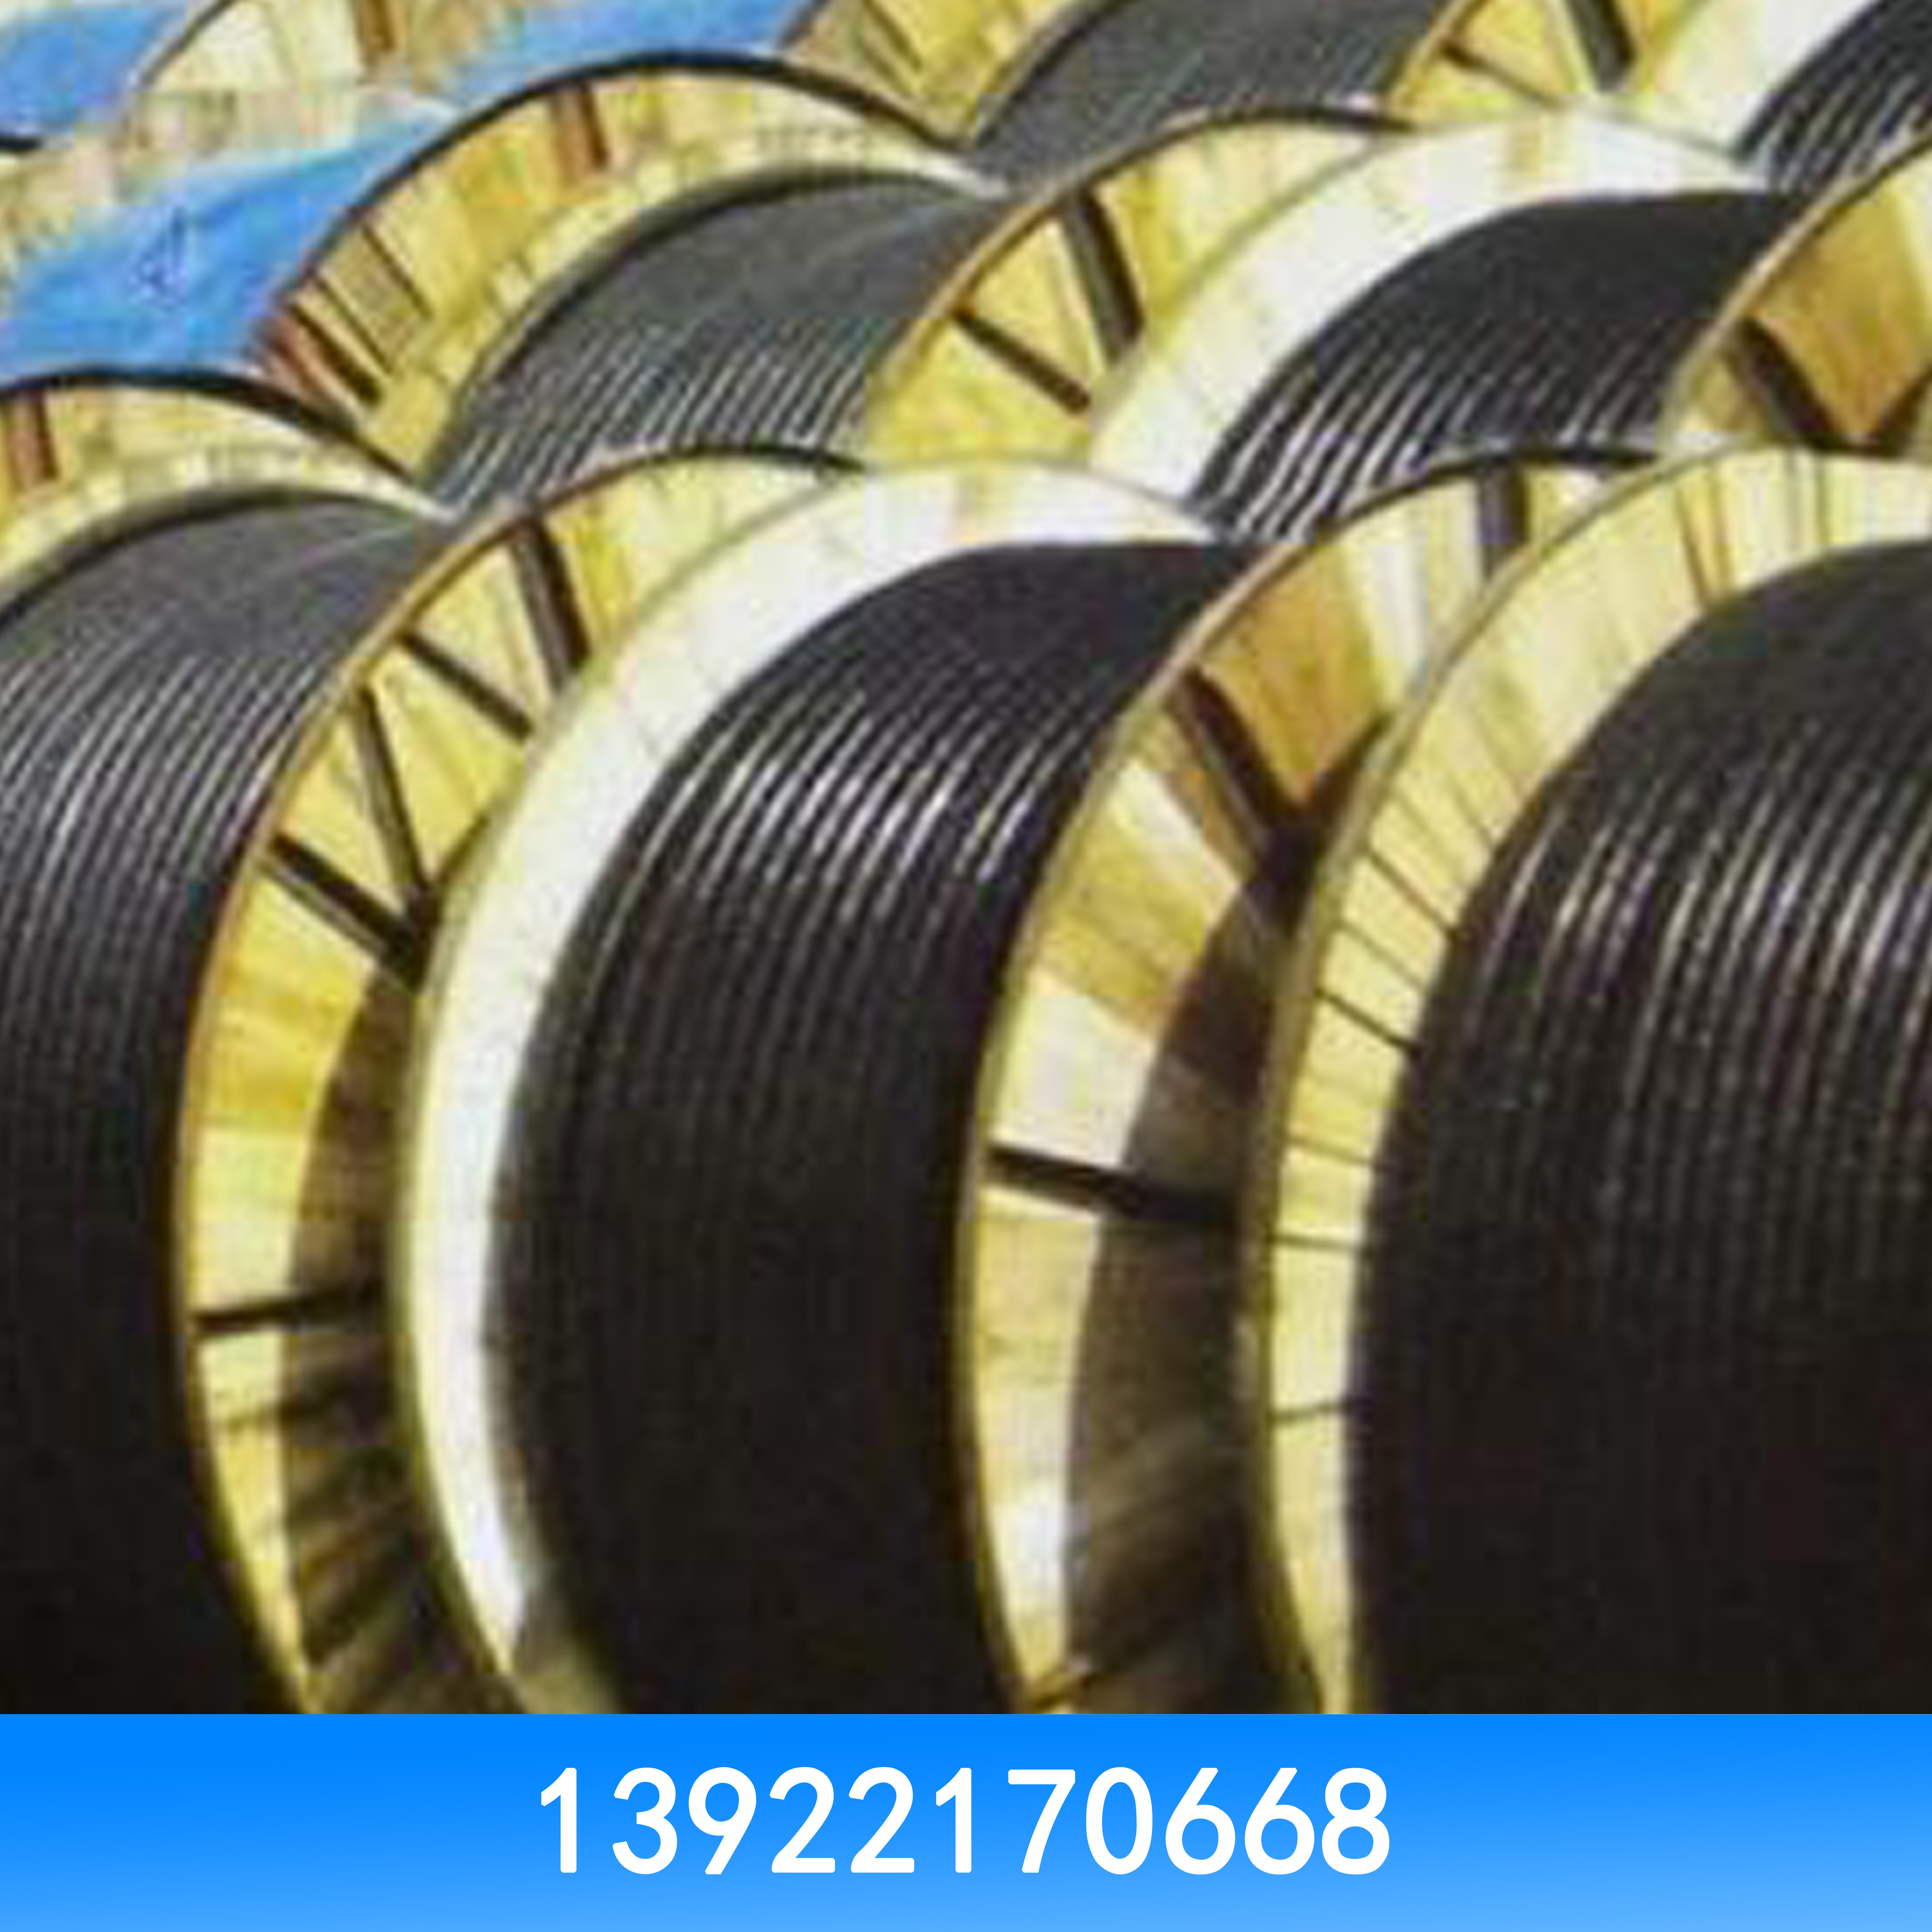 高价回收二手电线电缆高价回收电线电缆 高价回收二手电线电缆